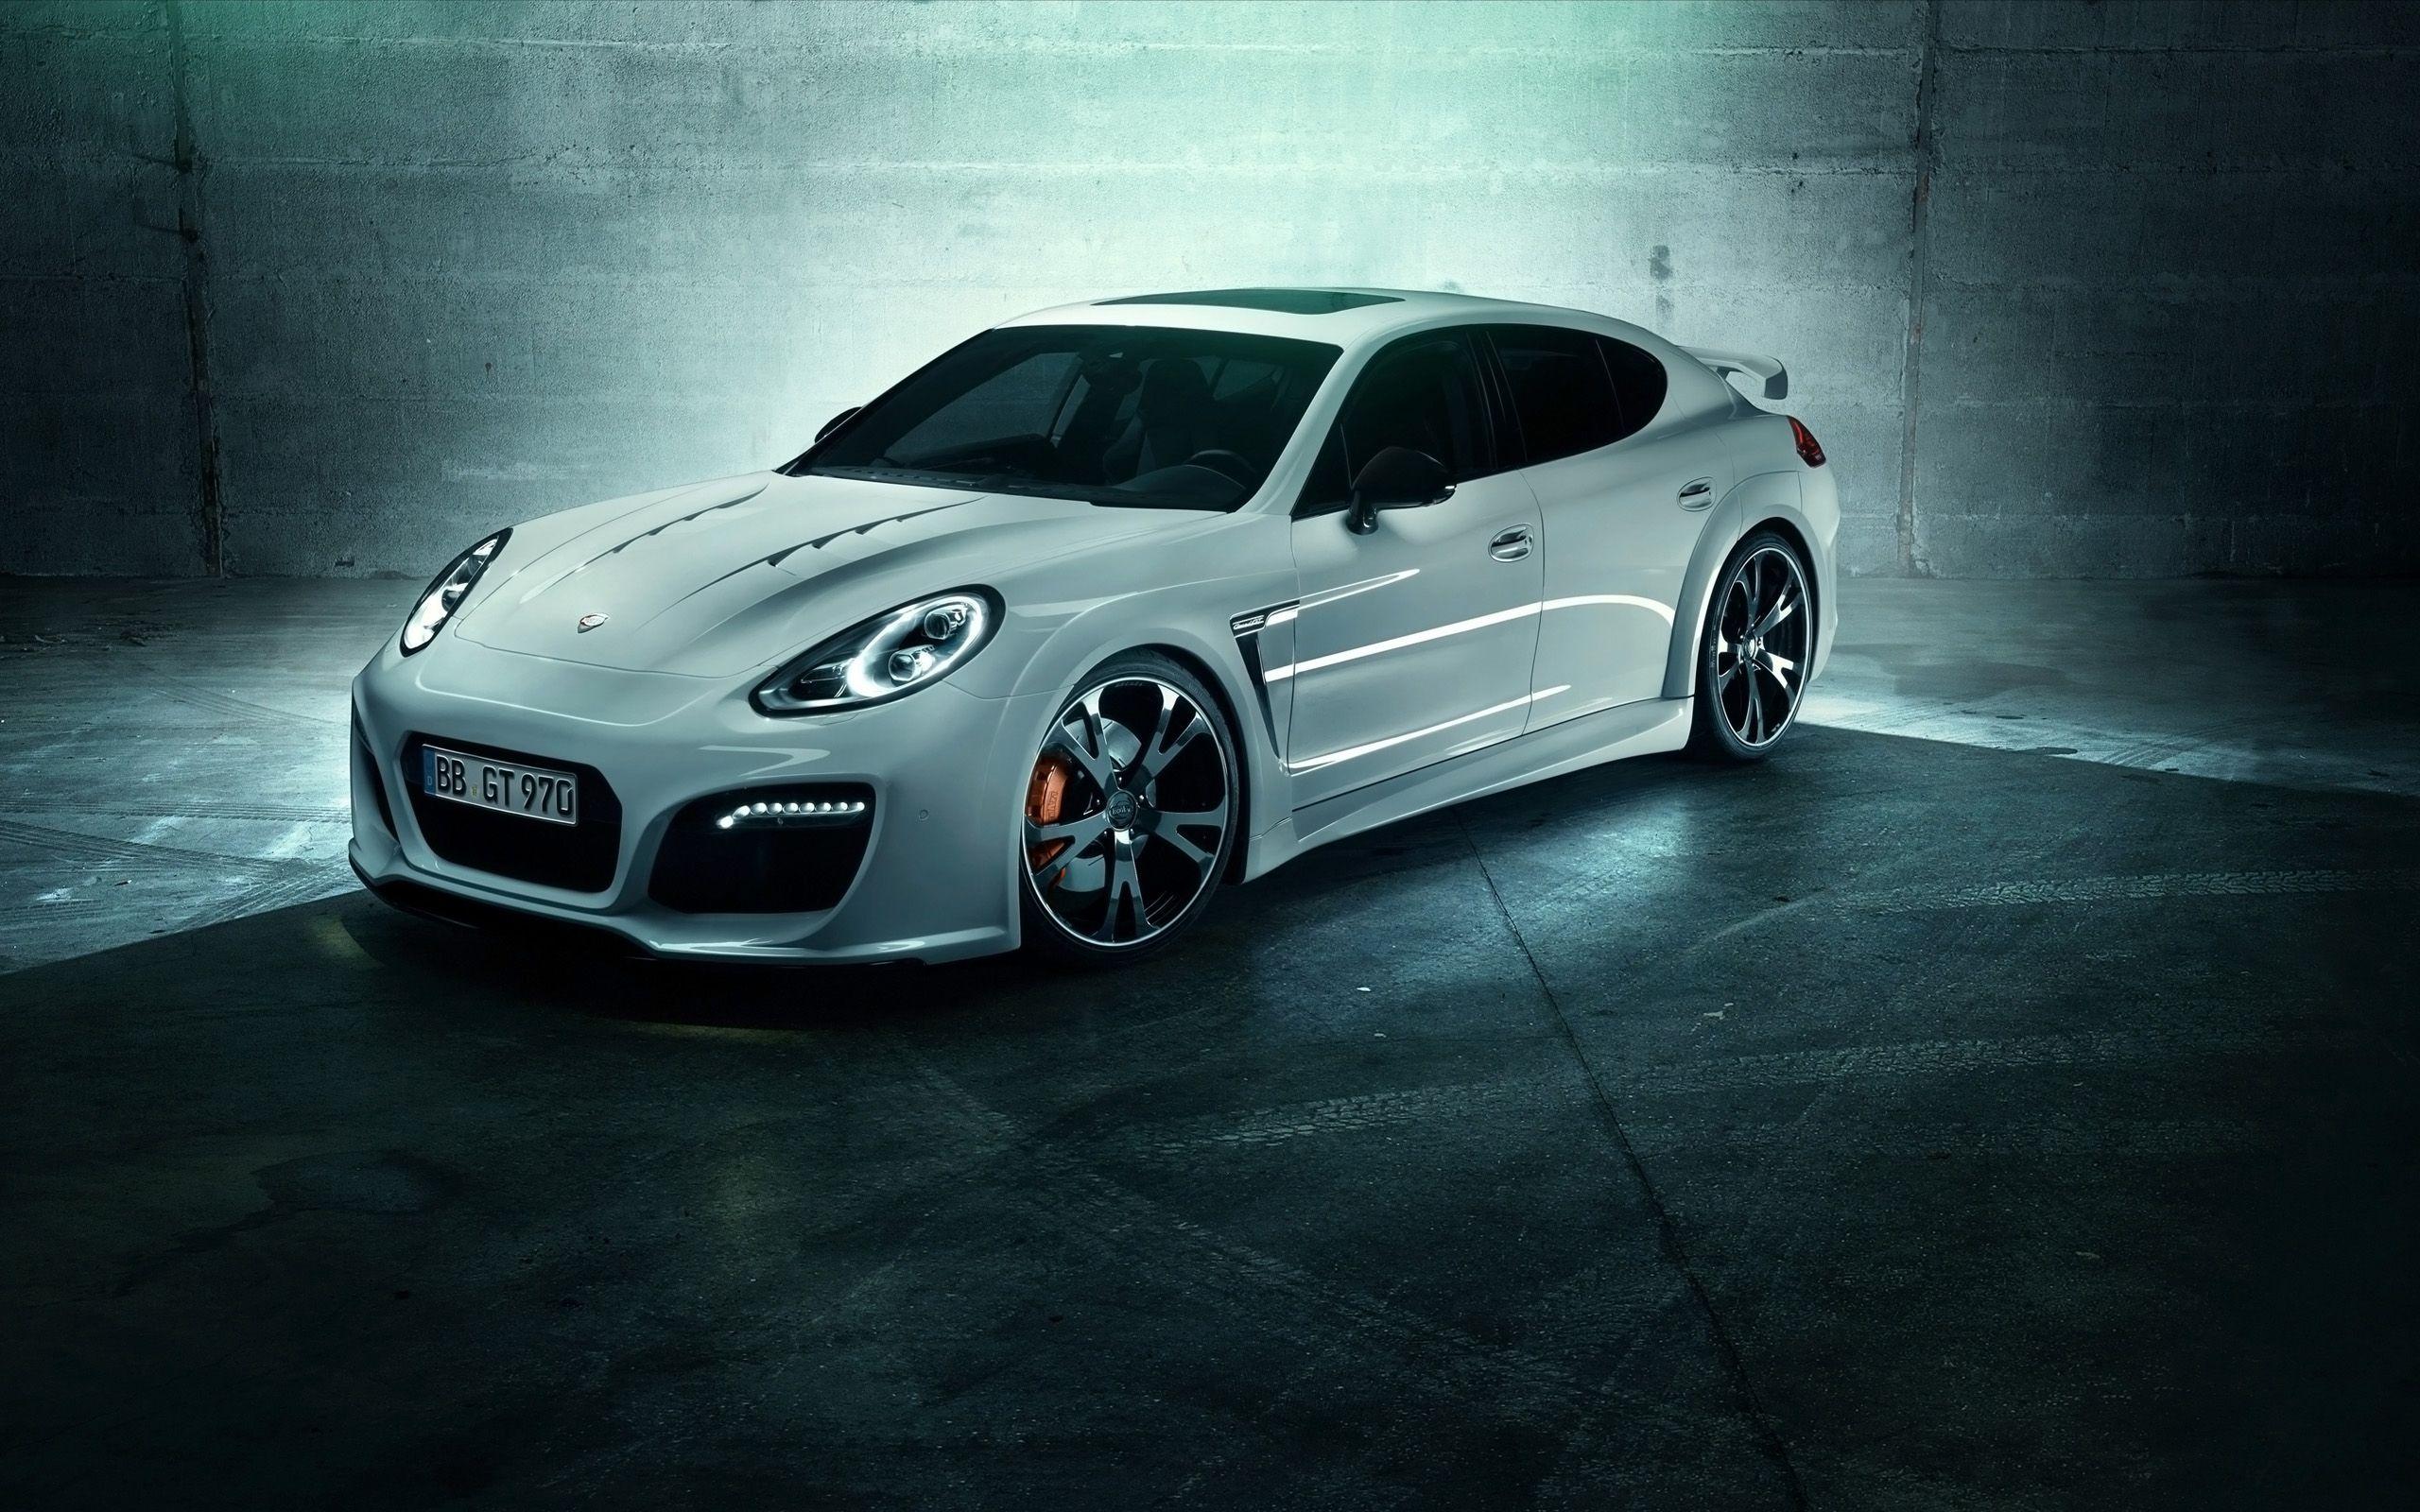 Porsche Panamera Wallpaper, Picture, Image